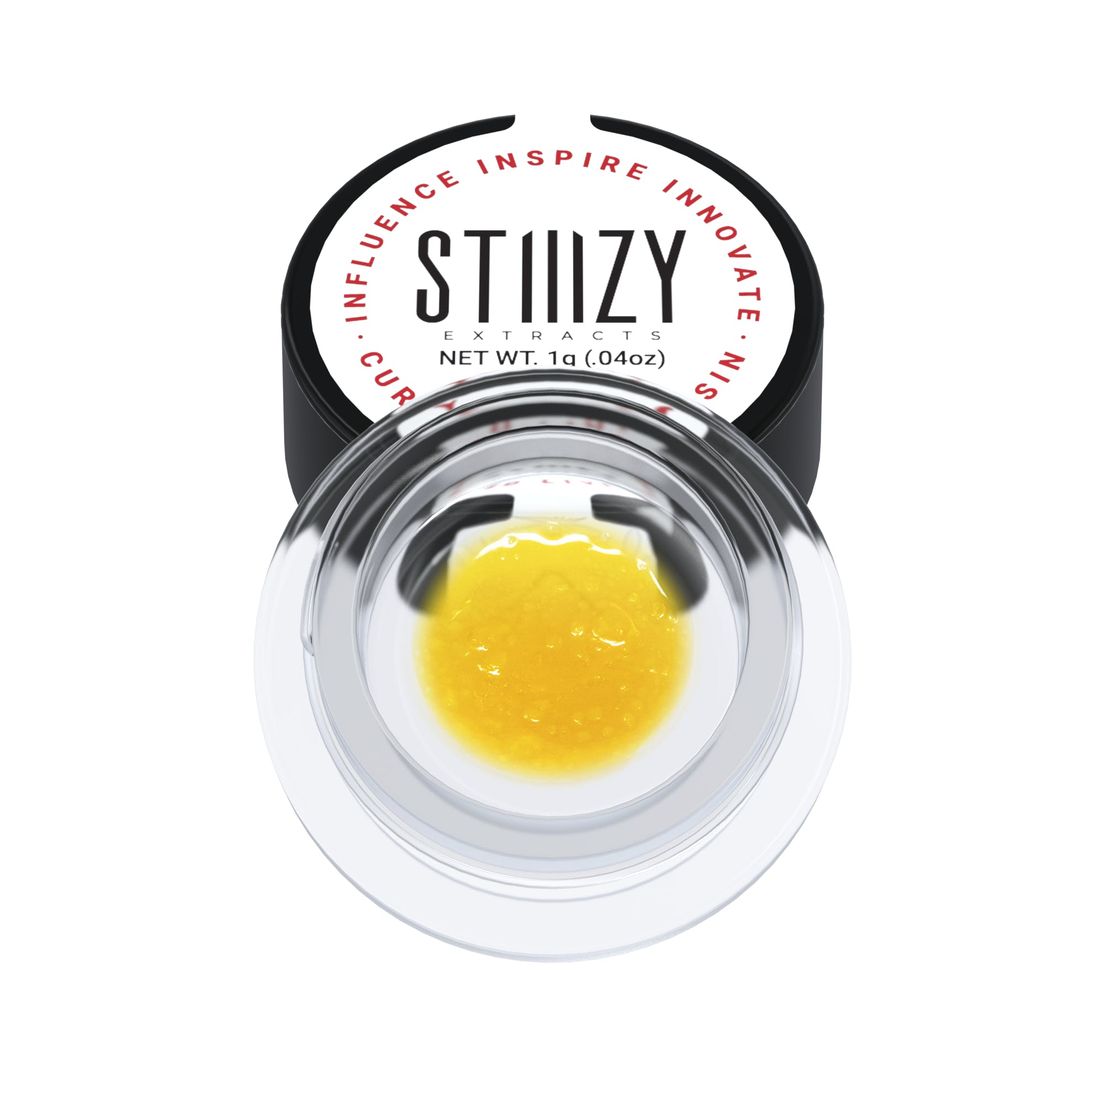 STIIIZY - Orange Creamsicle Extract - 1g